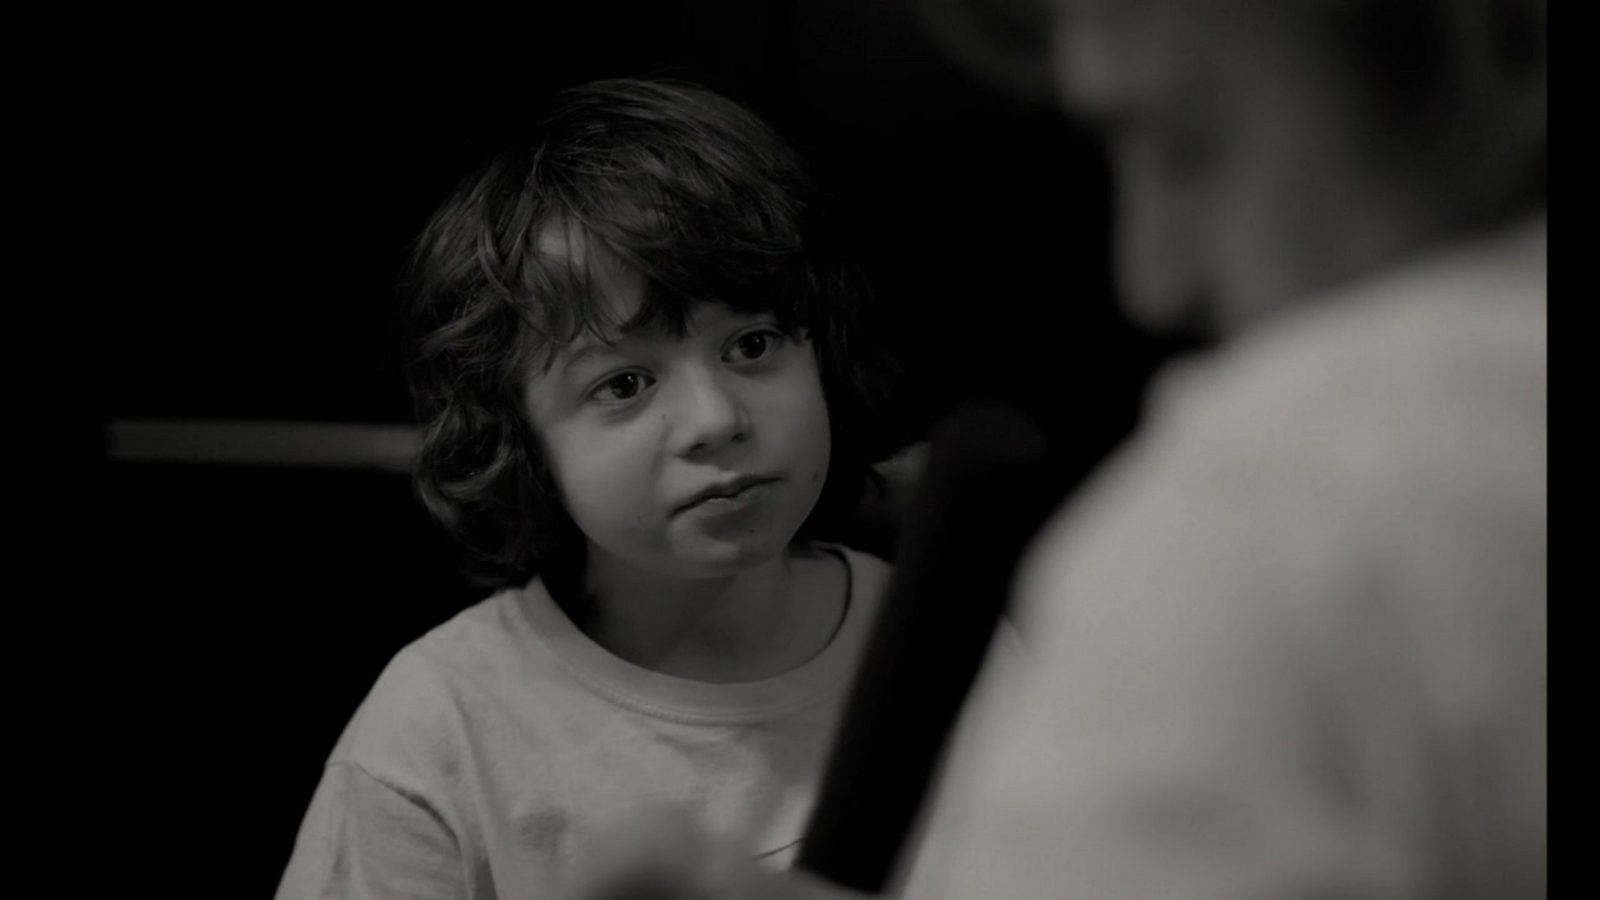 Хоакин Феникс даёт интервью племяннику в эксклюзивном фрагменте фильма «Камон Камон»